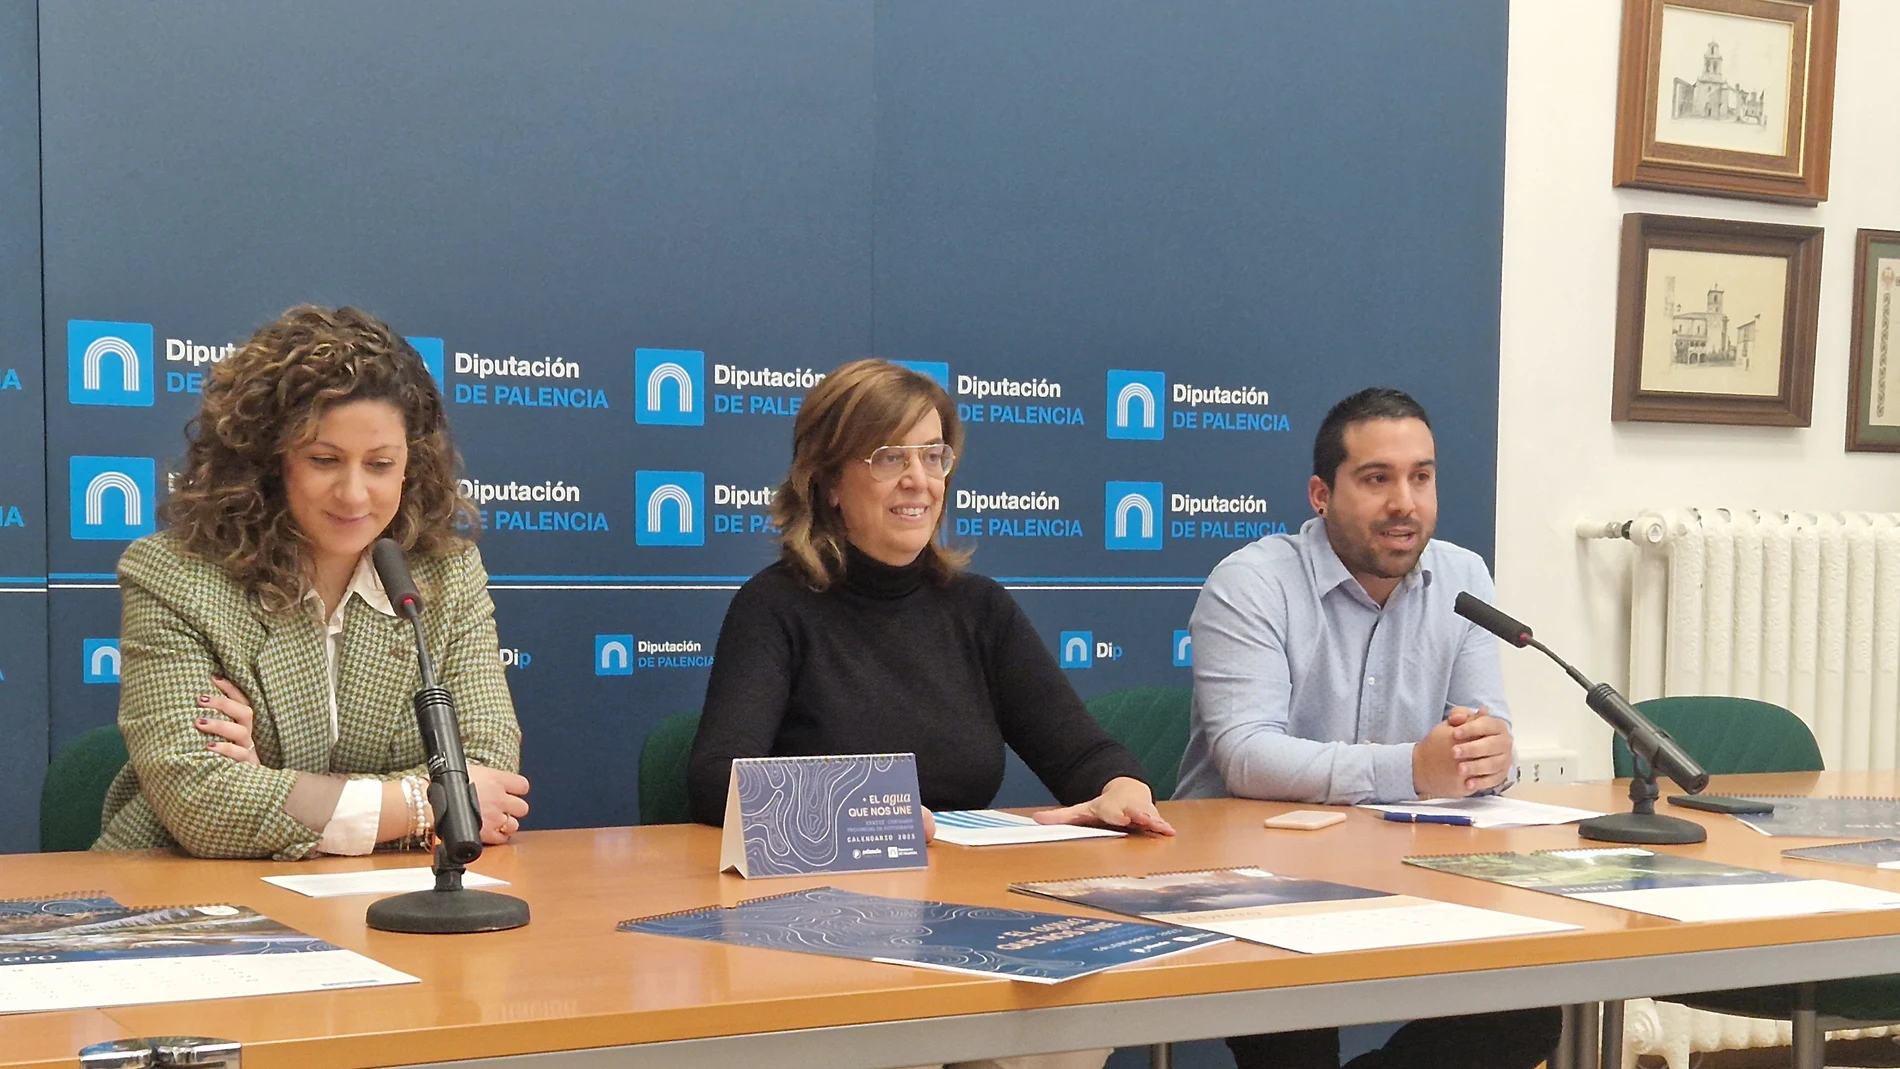 La presidente de la Diputación de Palencia, Ángeles Armisén, presenta el calendario solidario